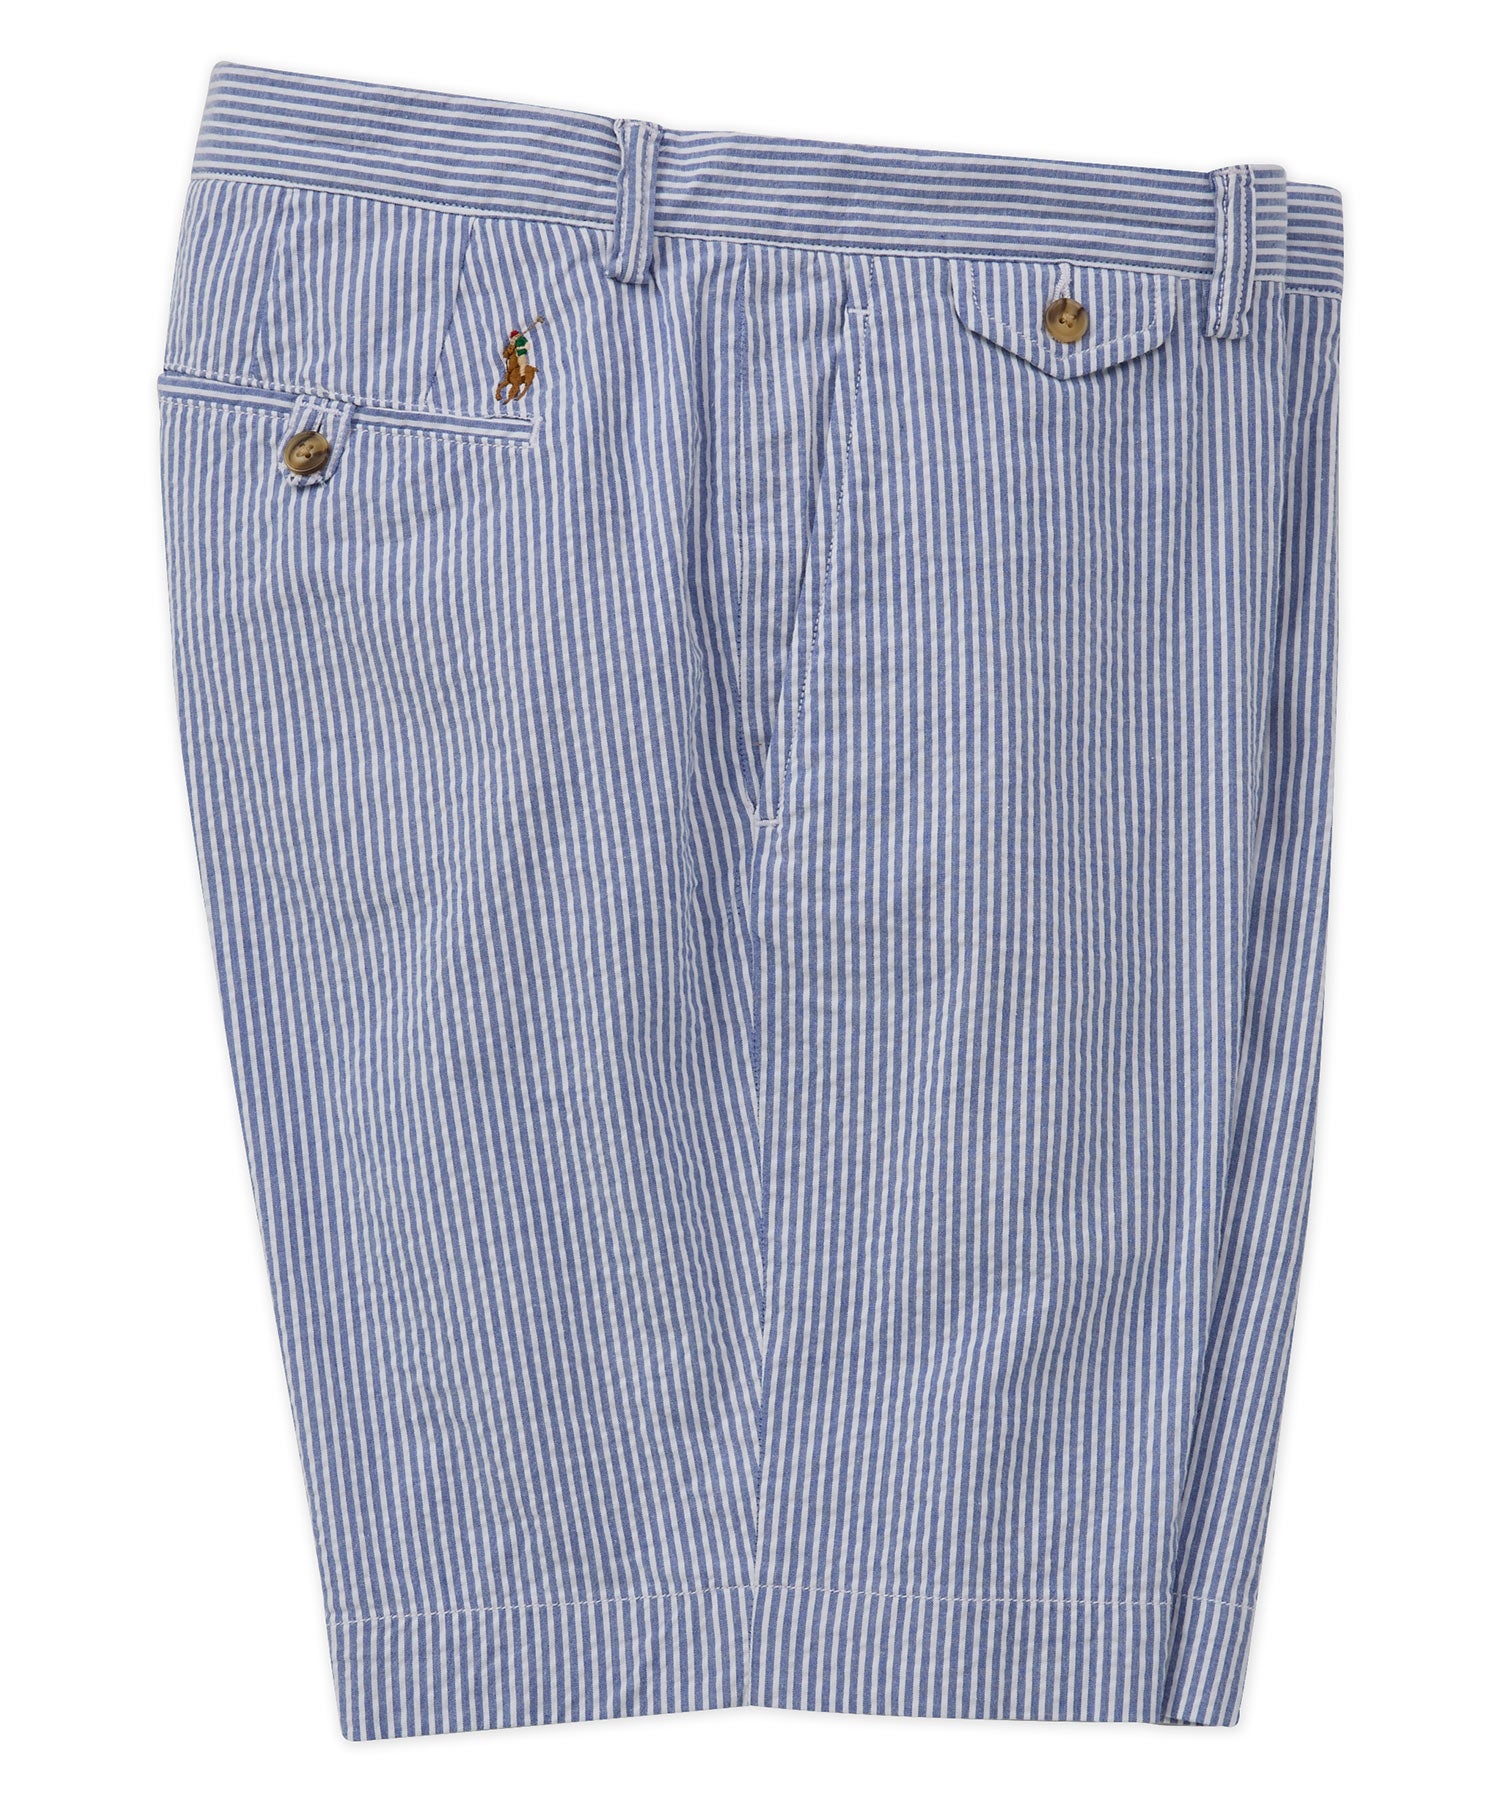 Pantaloncini chino elasticizzati in seersucker Polo Ralph Lauren, Men's Big & Tall